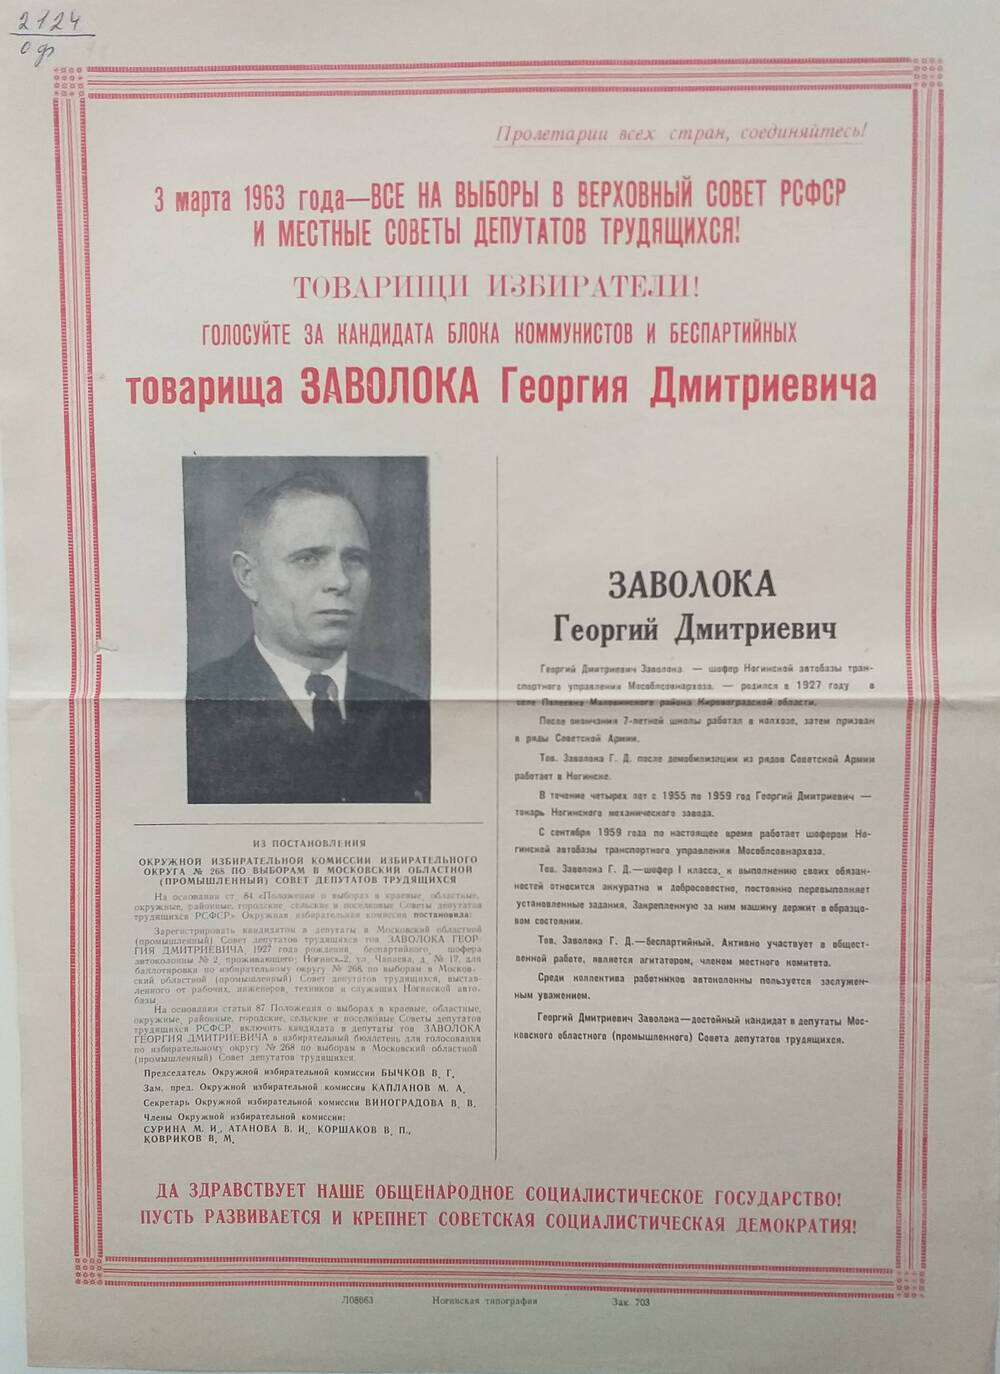 Плакат Призыв к голосованию на выборах 3 марта 1963 года за товарища Заволока Георгия Дмитриевича - шофёра Ногинской автобазы транспортного управления Мособлсовнархоза, 1963 год.